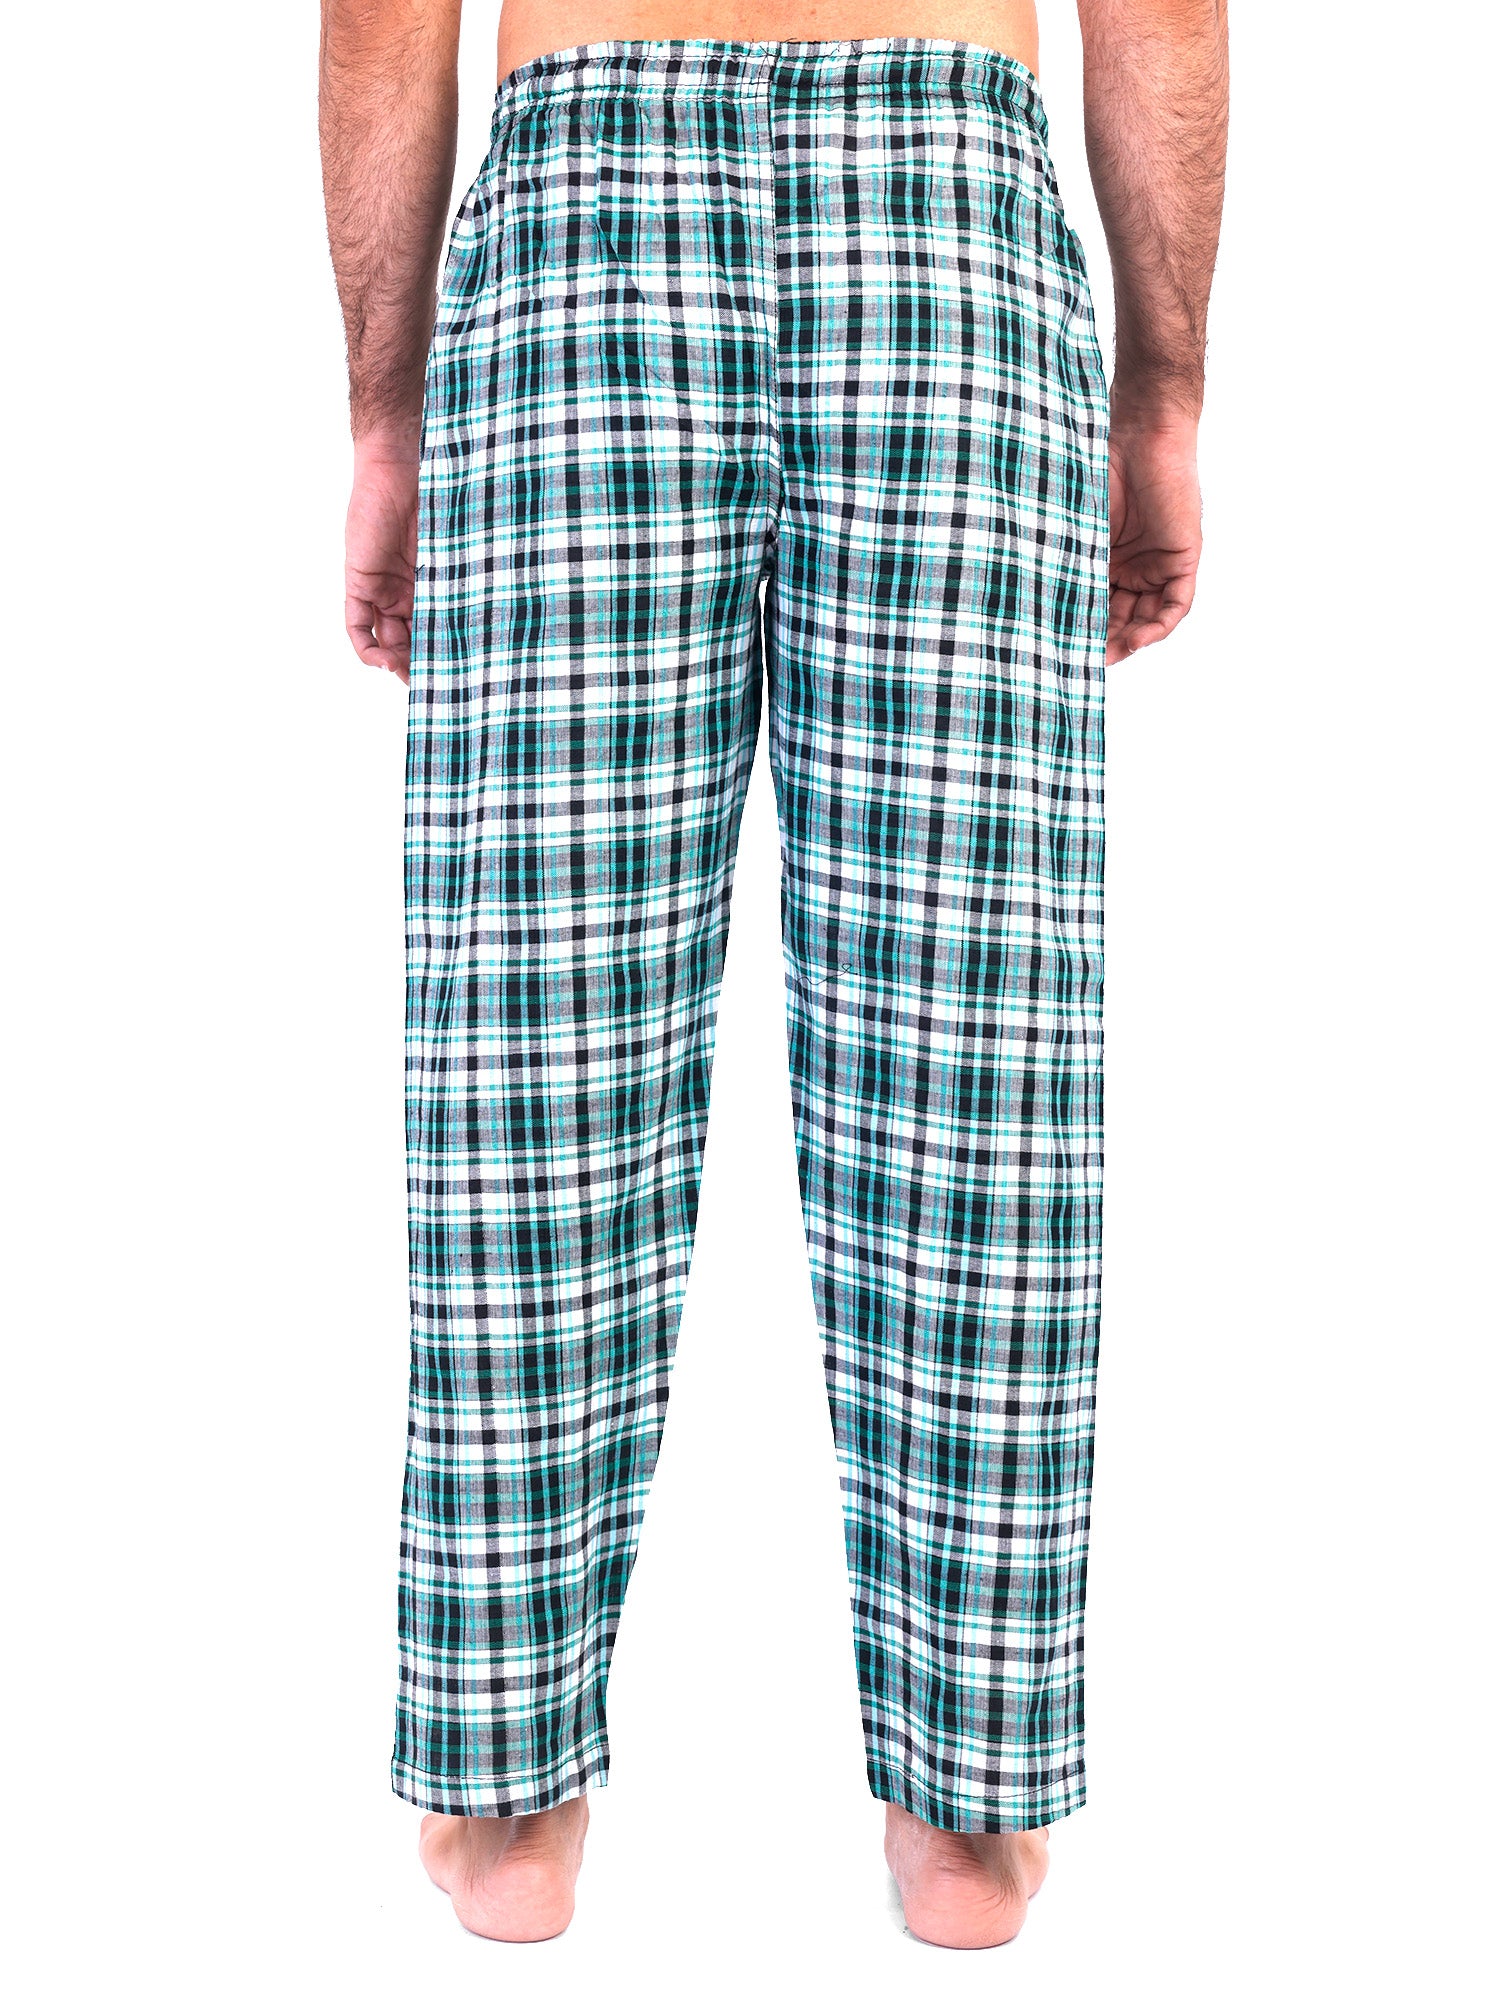 Ollabaky Yellow Lumberjack Tartan Plaid Pajama Pants for Men Pajama Bottoms  Sleep Lounge Pj Pants at  Men's Clothing store